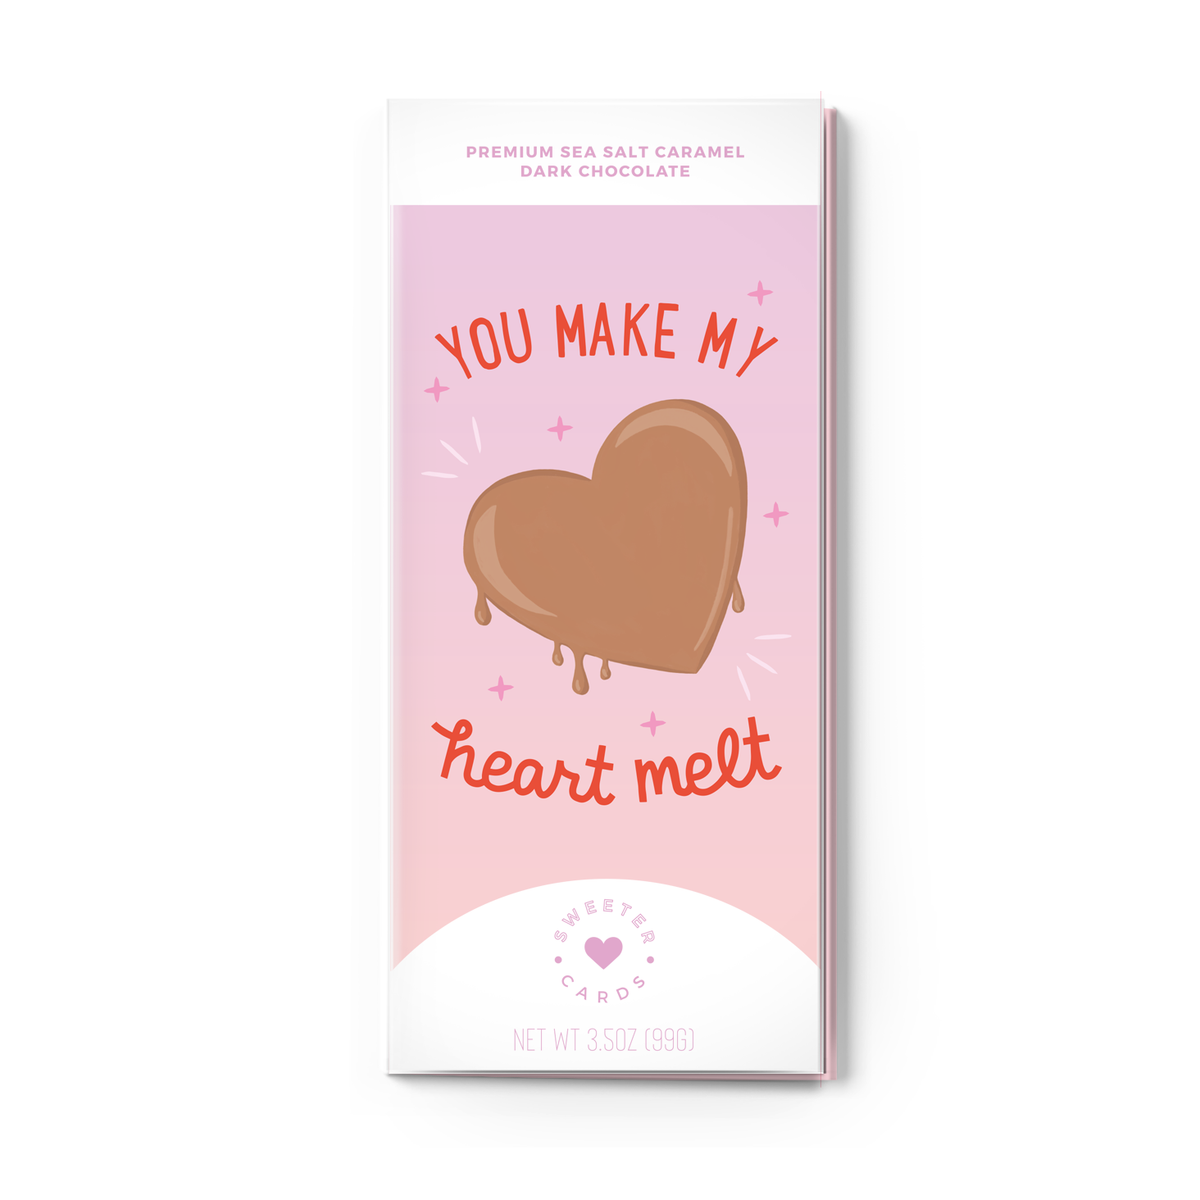 Make My Heart Melt Card + Chocolate Bar